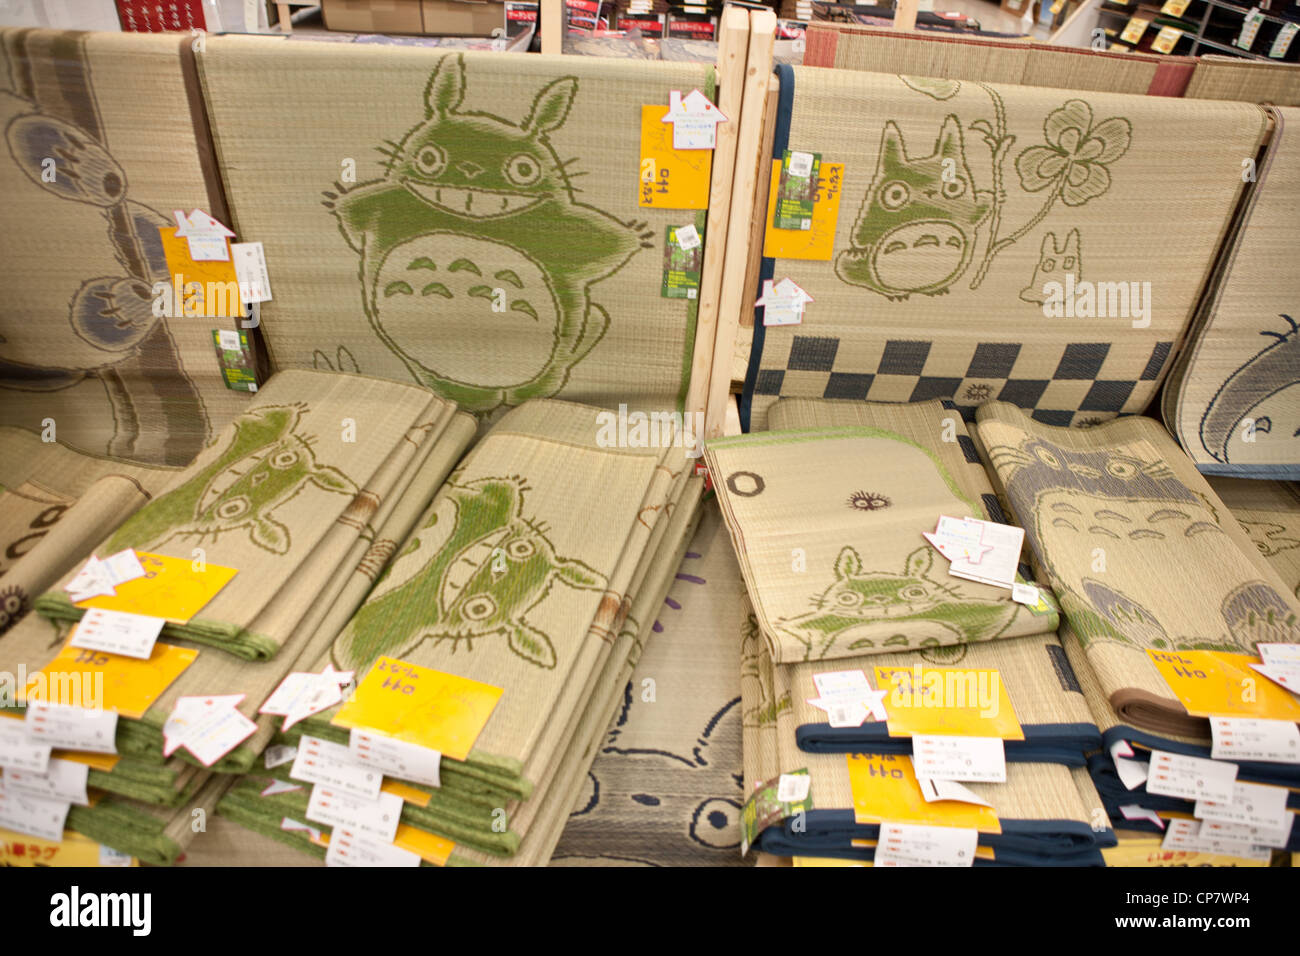 Stroh Tatami-Matten für den Verkauf in japanische Kaufhaus Darstellung Miyazaki Charakter, Totoro. Stockfoto